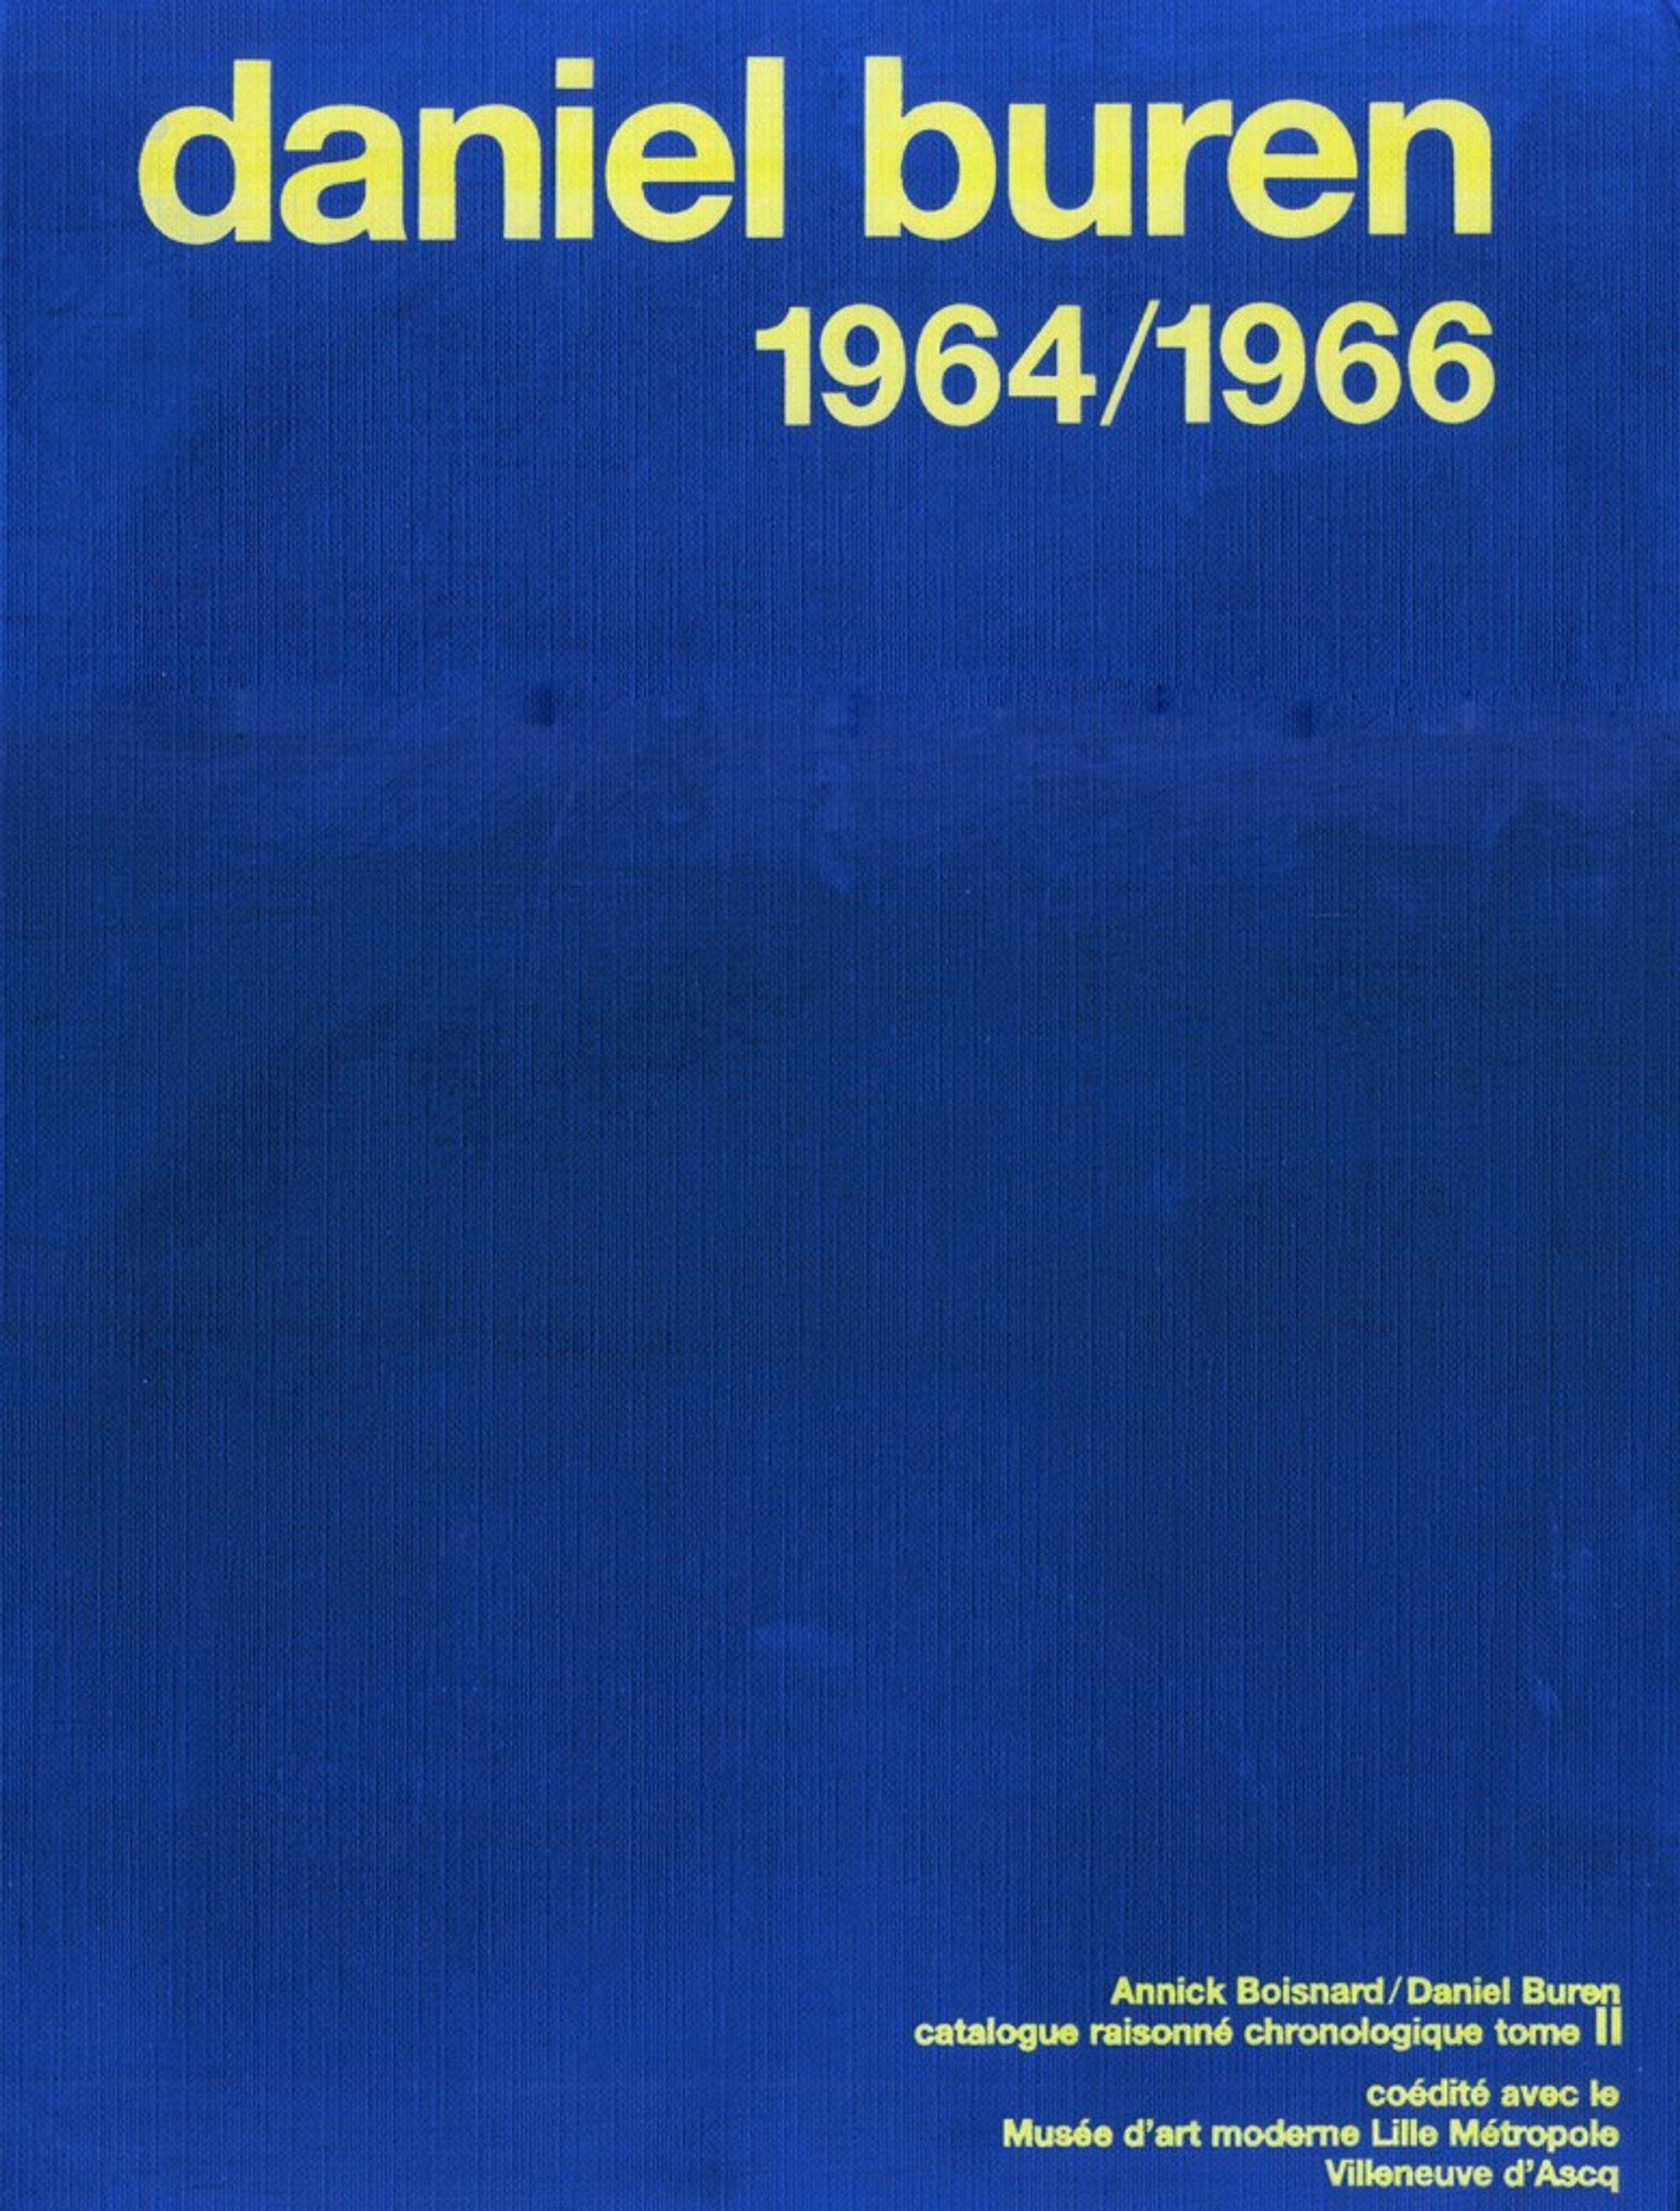 Detail view of Daniel Buren. Catalogue raisonne chronologique, tome 2: 1964 – 1966 against a plain gray background